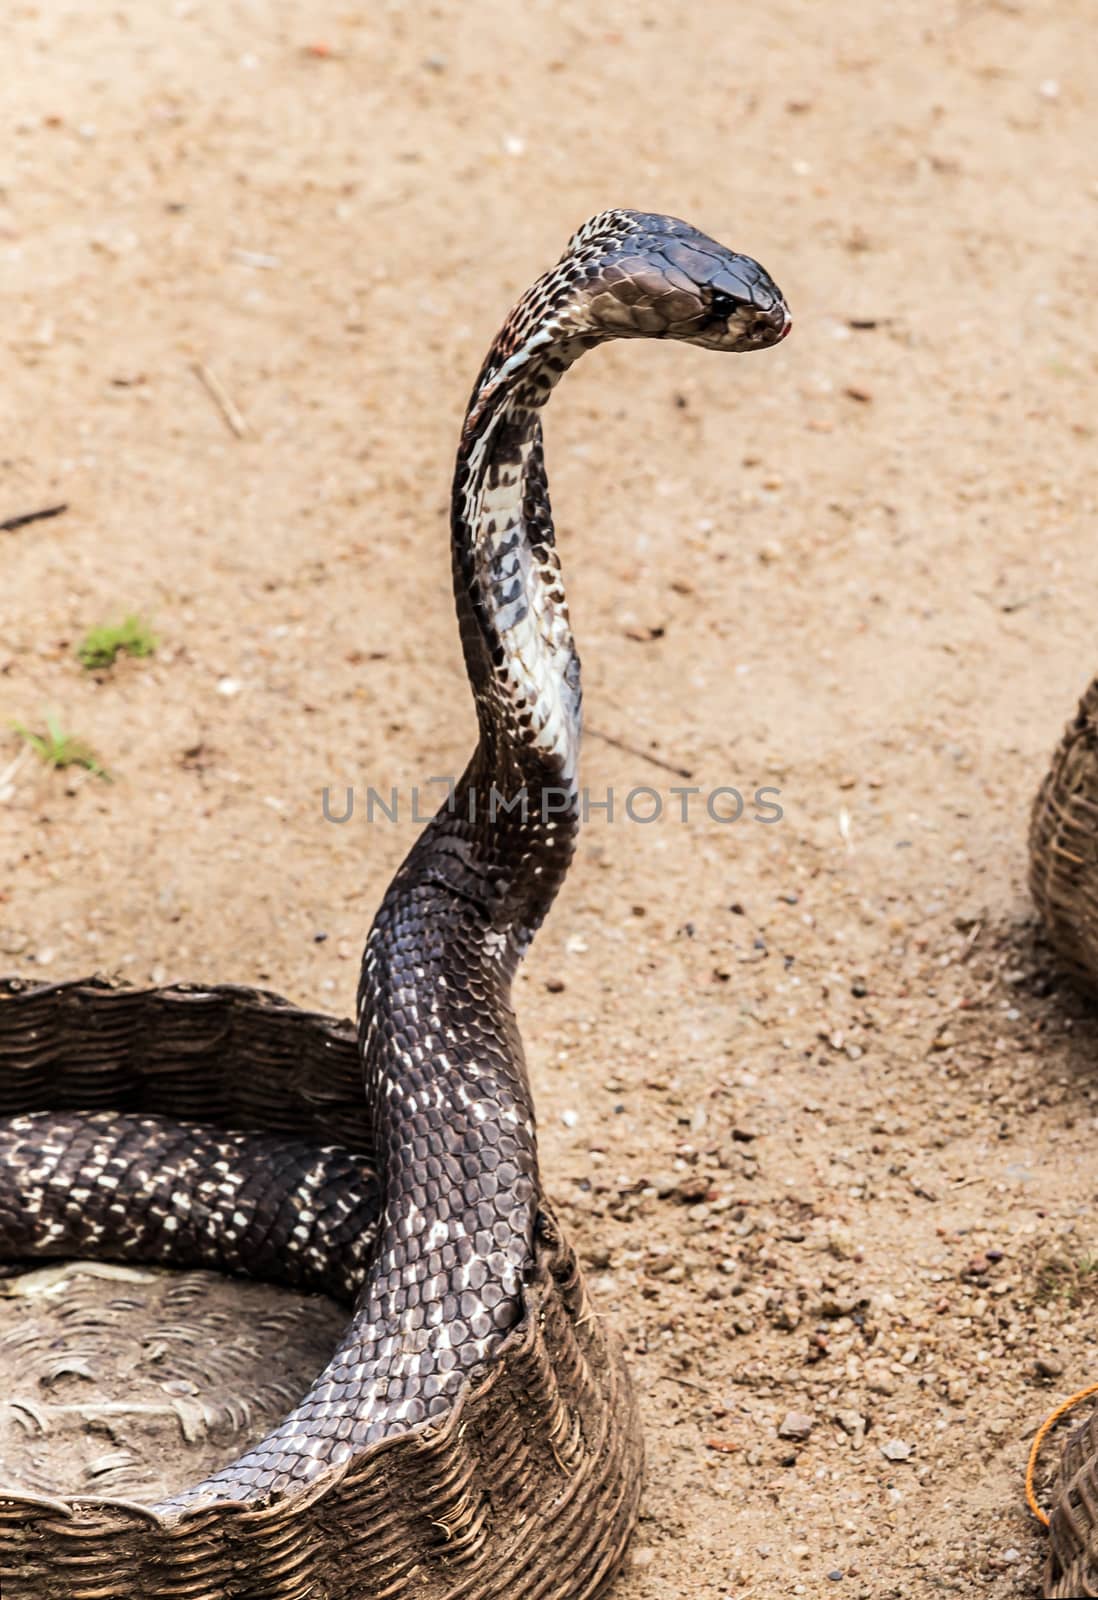 King Cobra Snake with their hoods extended, Viper snake, Ophiophagus hannah venomous snake.